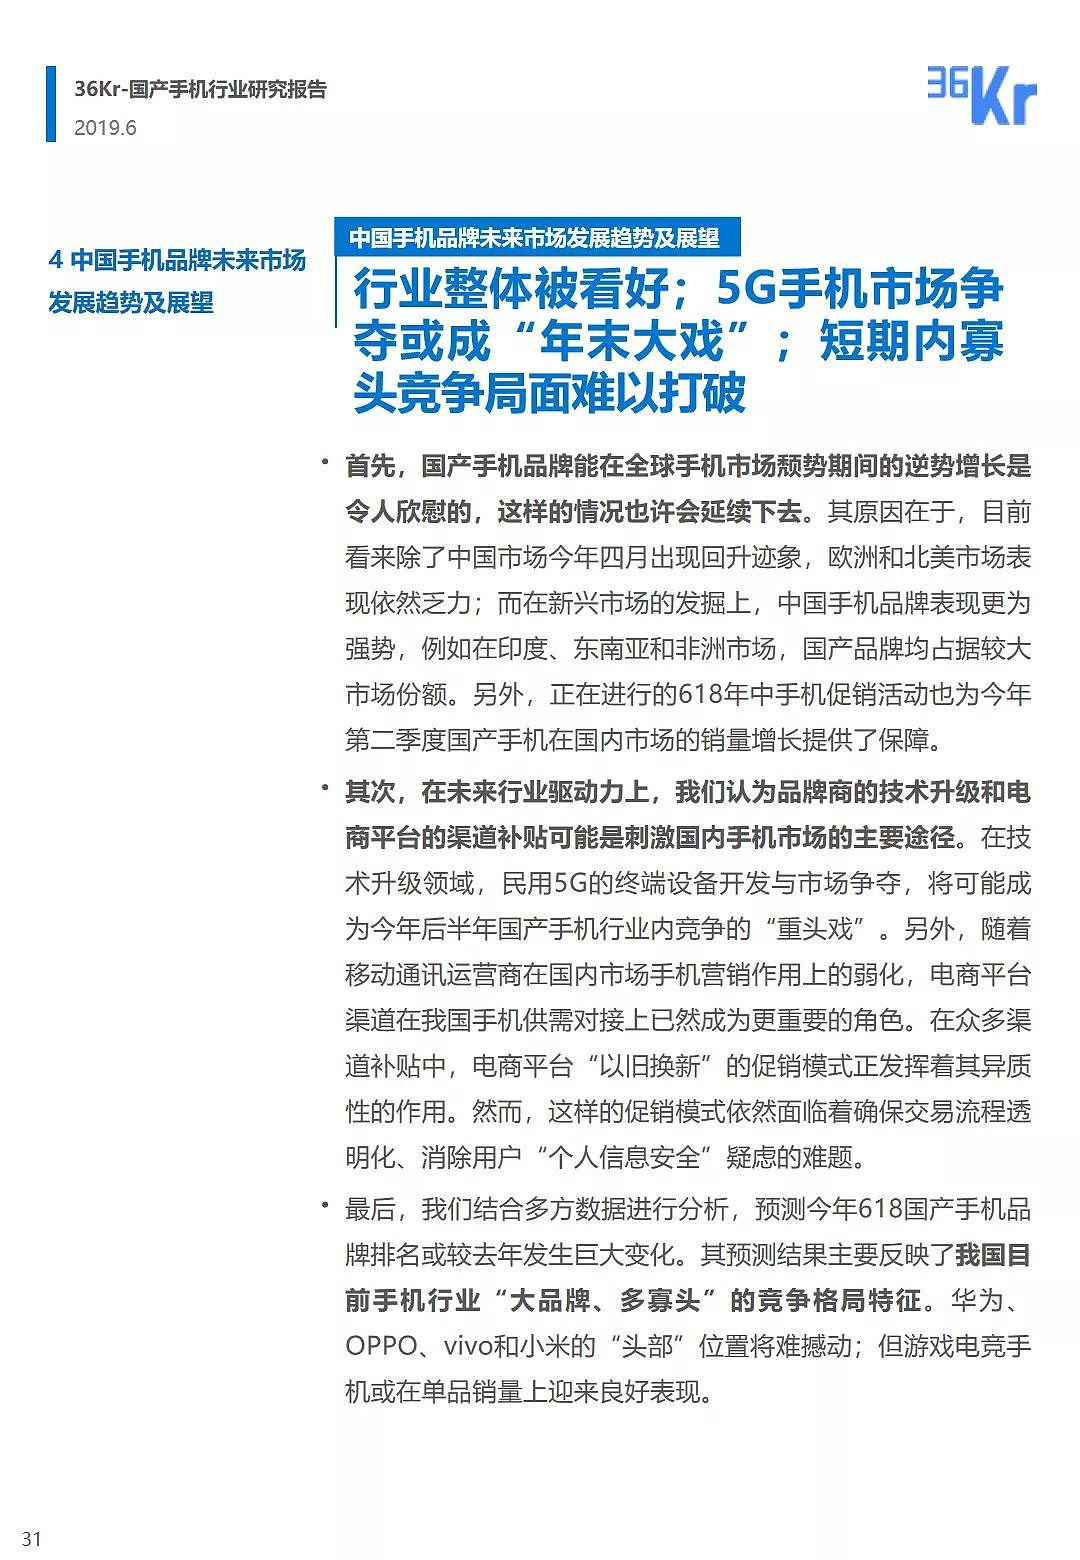 中国手机品牌市场营销研究报告 | 36氪研究 - 32